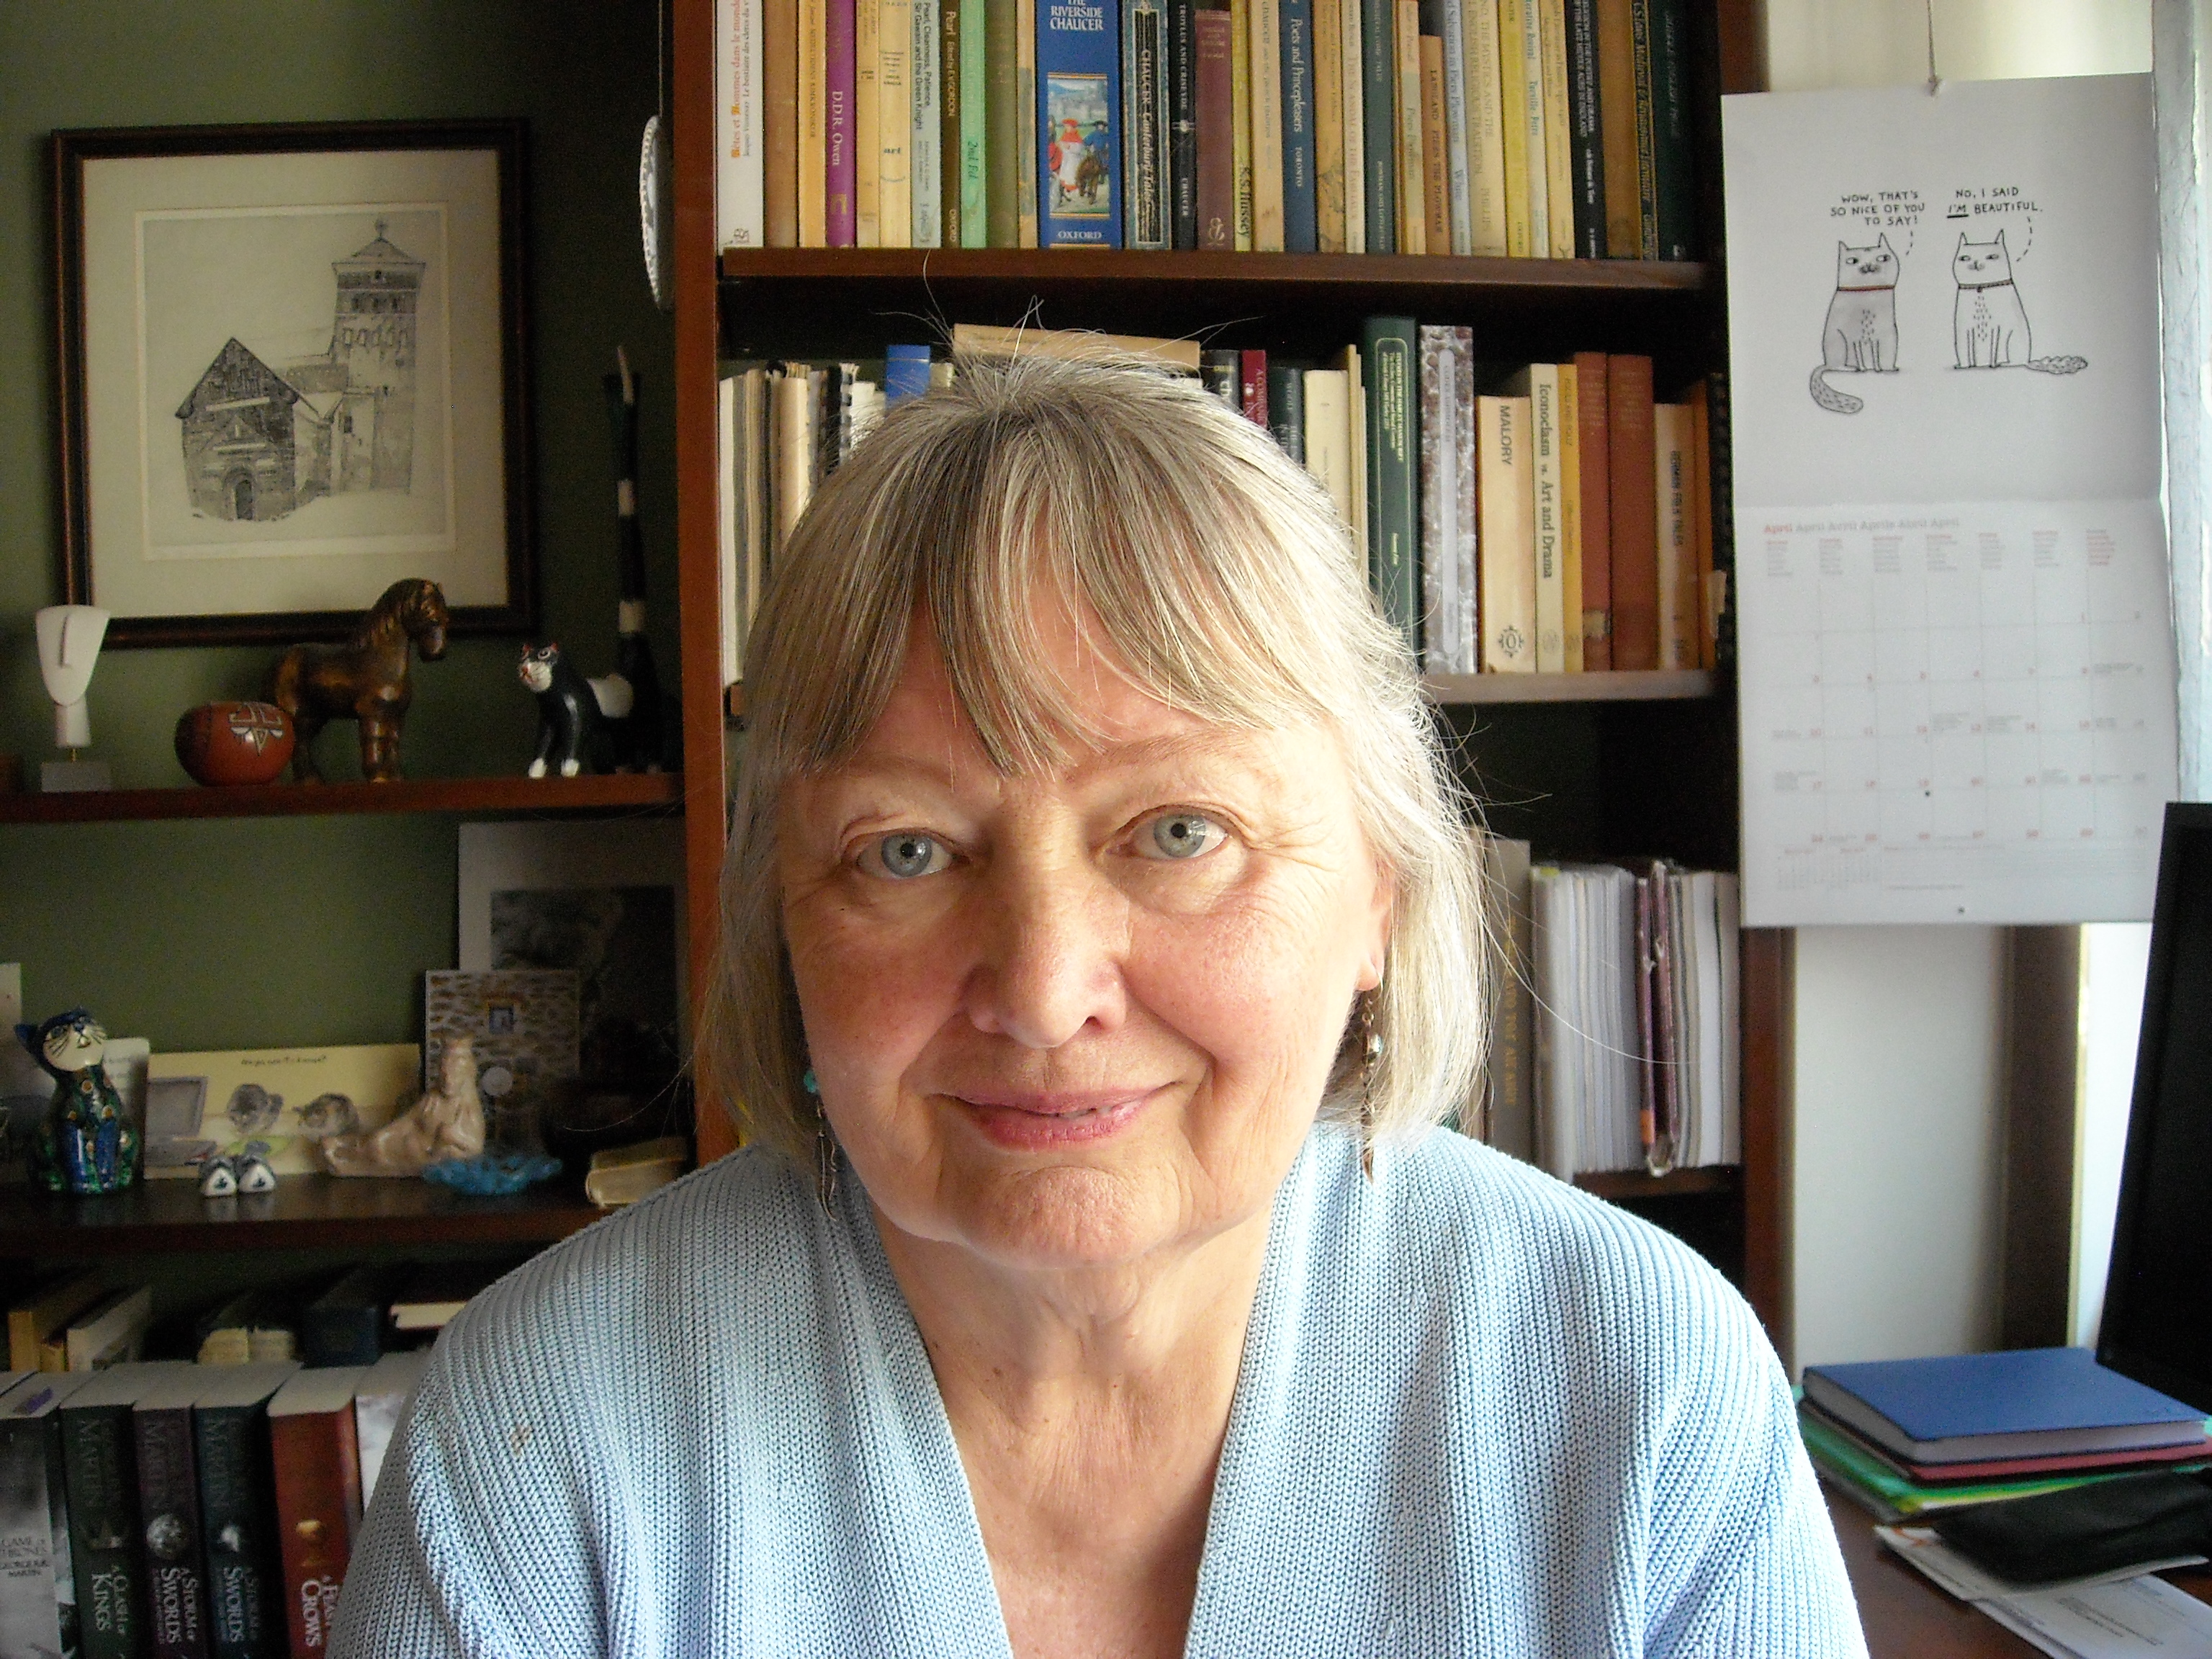 Karin Boklund-Λαγοπούλου,Ομότιμη Καθηγήτρια Αγγλικής και Συγκριτικής Λογοτεχνίας, Θεωρίας της Λογοτεχνίας και Συγκριτικής Ανάλυσης Κειμένων, Τμήμα Αγγλικής Γλώσσας και Φιλολογίας ΑΠΘ